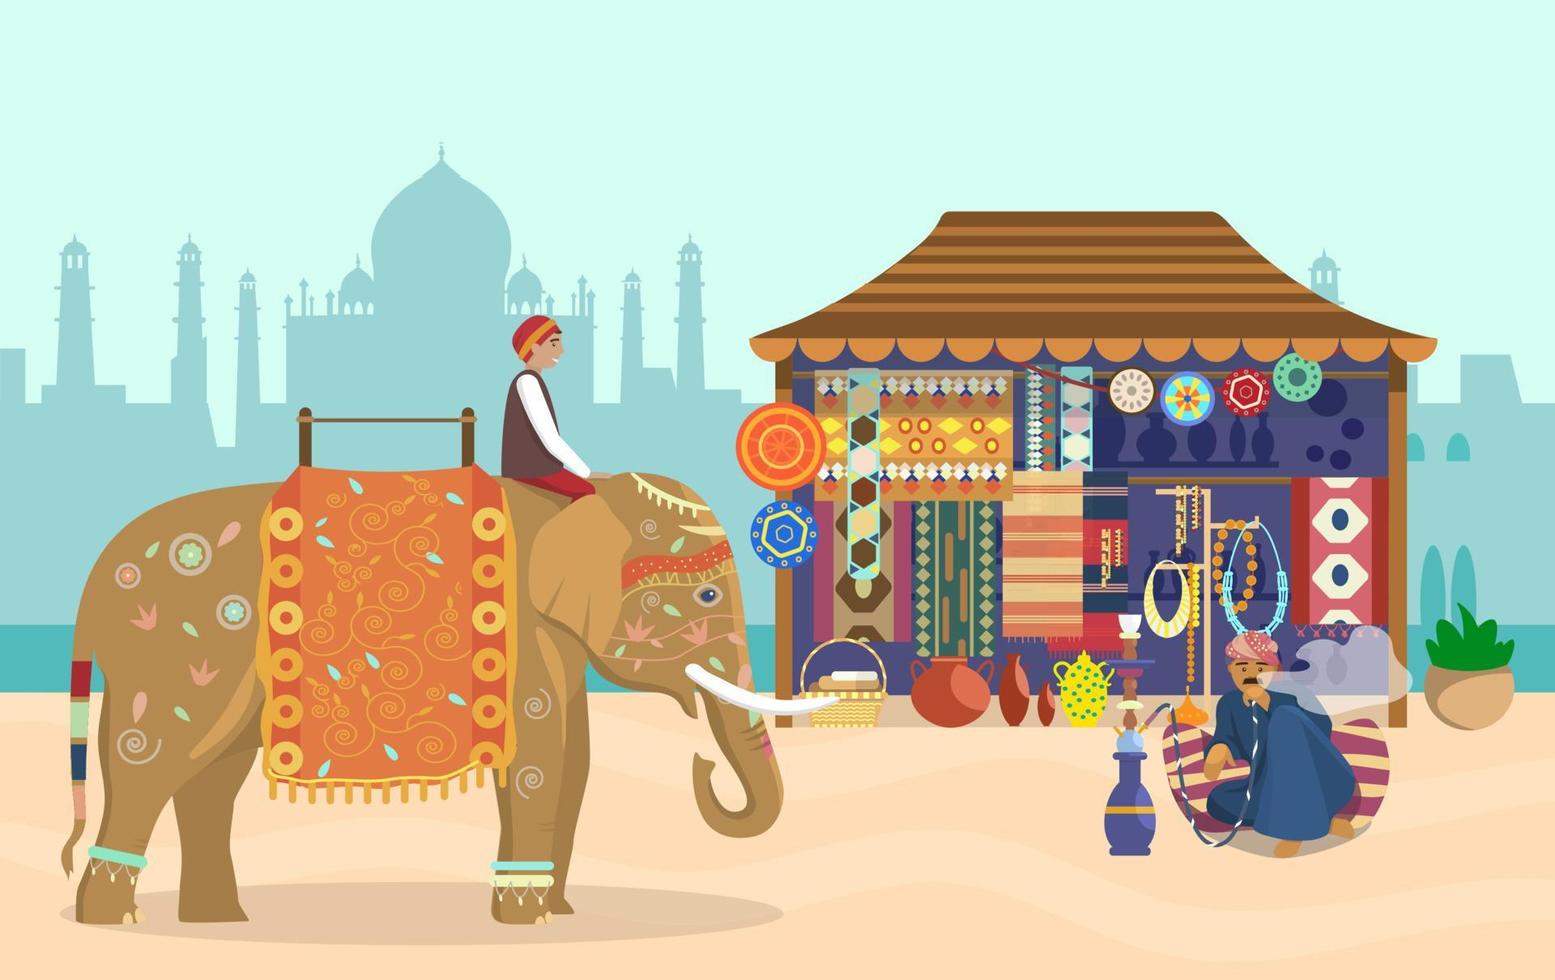 ilustración vectorial de la vida india. jinete de elefante en elefante decorado, silueta de taj mahal, tienda de souvenirs, cerámica, alfombras, telas, joyas, hombre fumando narguile sentado en una almohada. vector